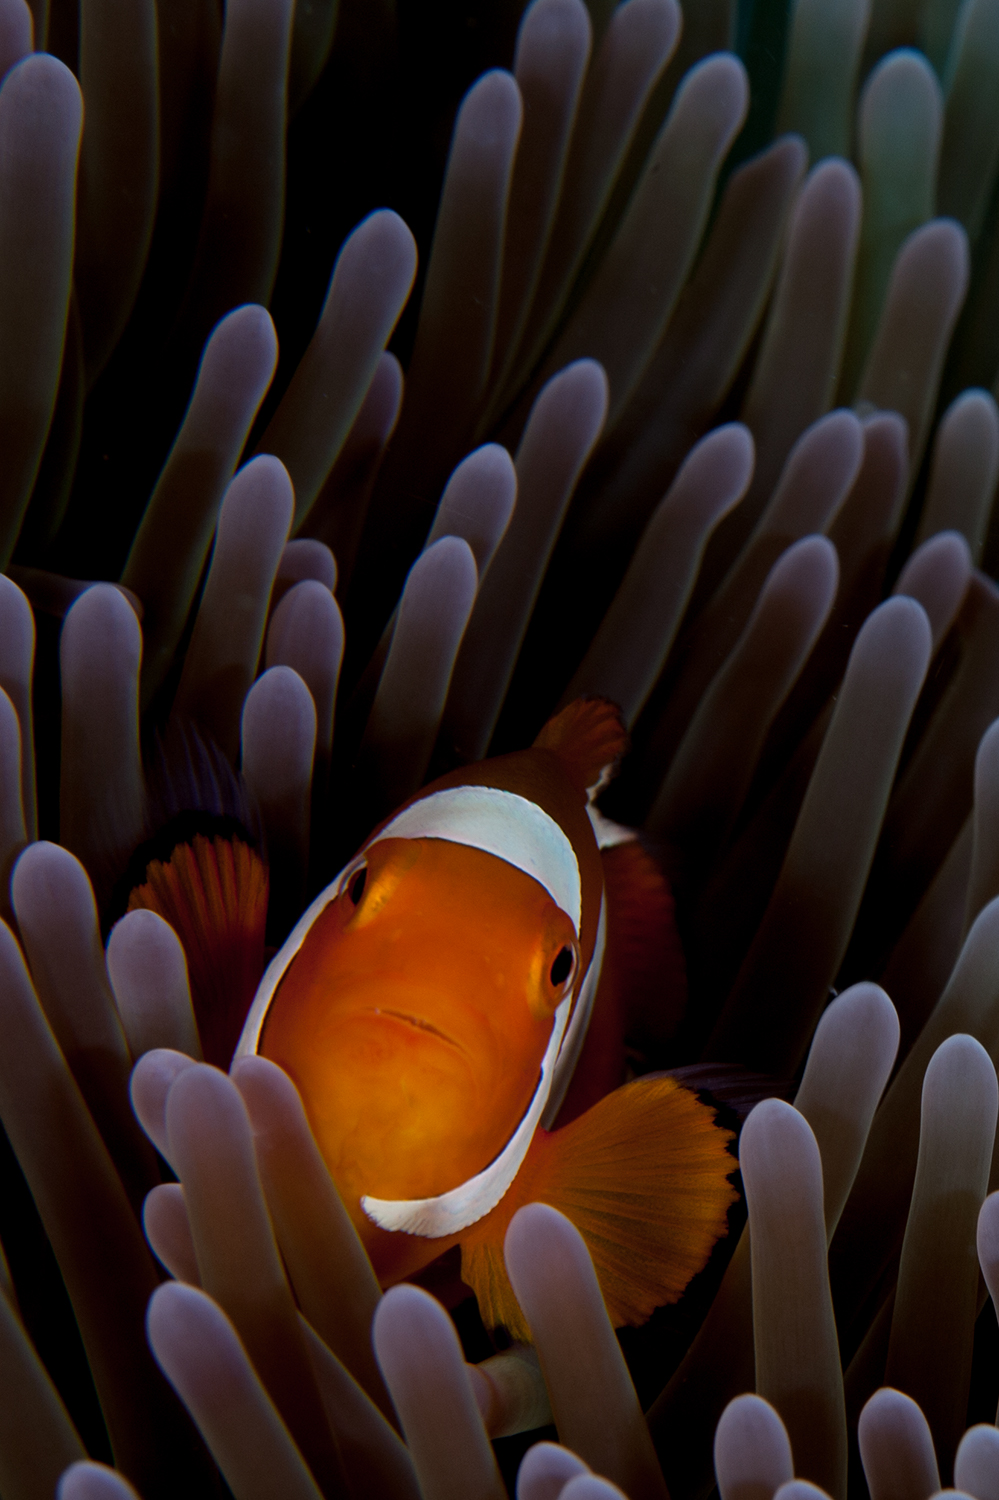 Peixe palhaco / False clown anemonefish / Amphiprion ocellaris